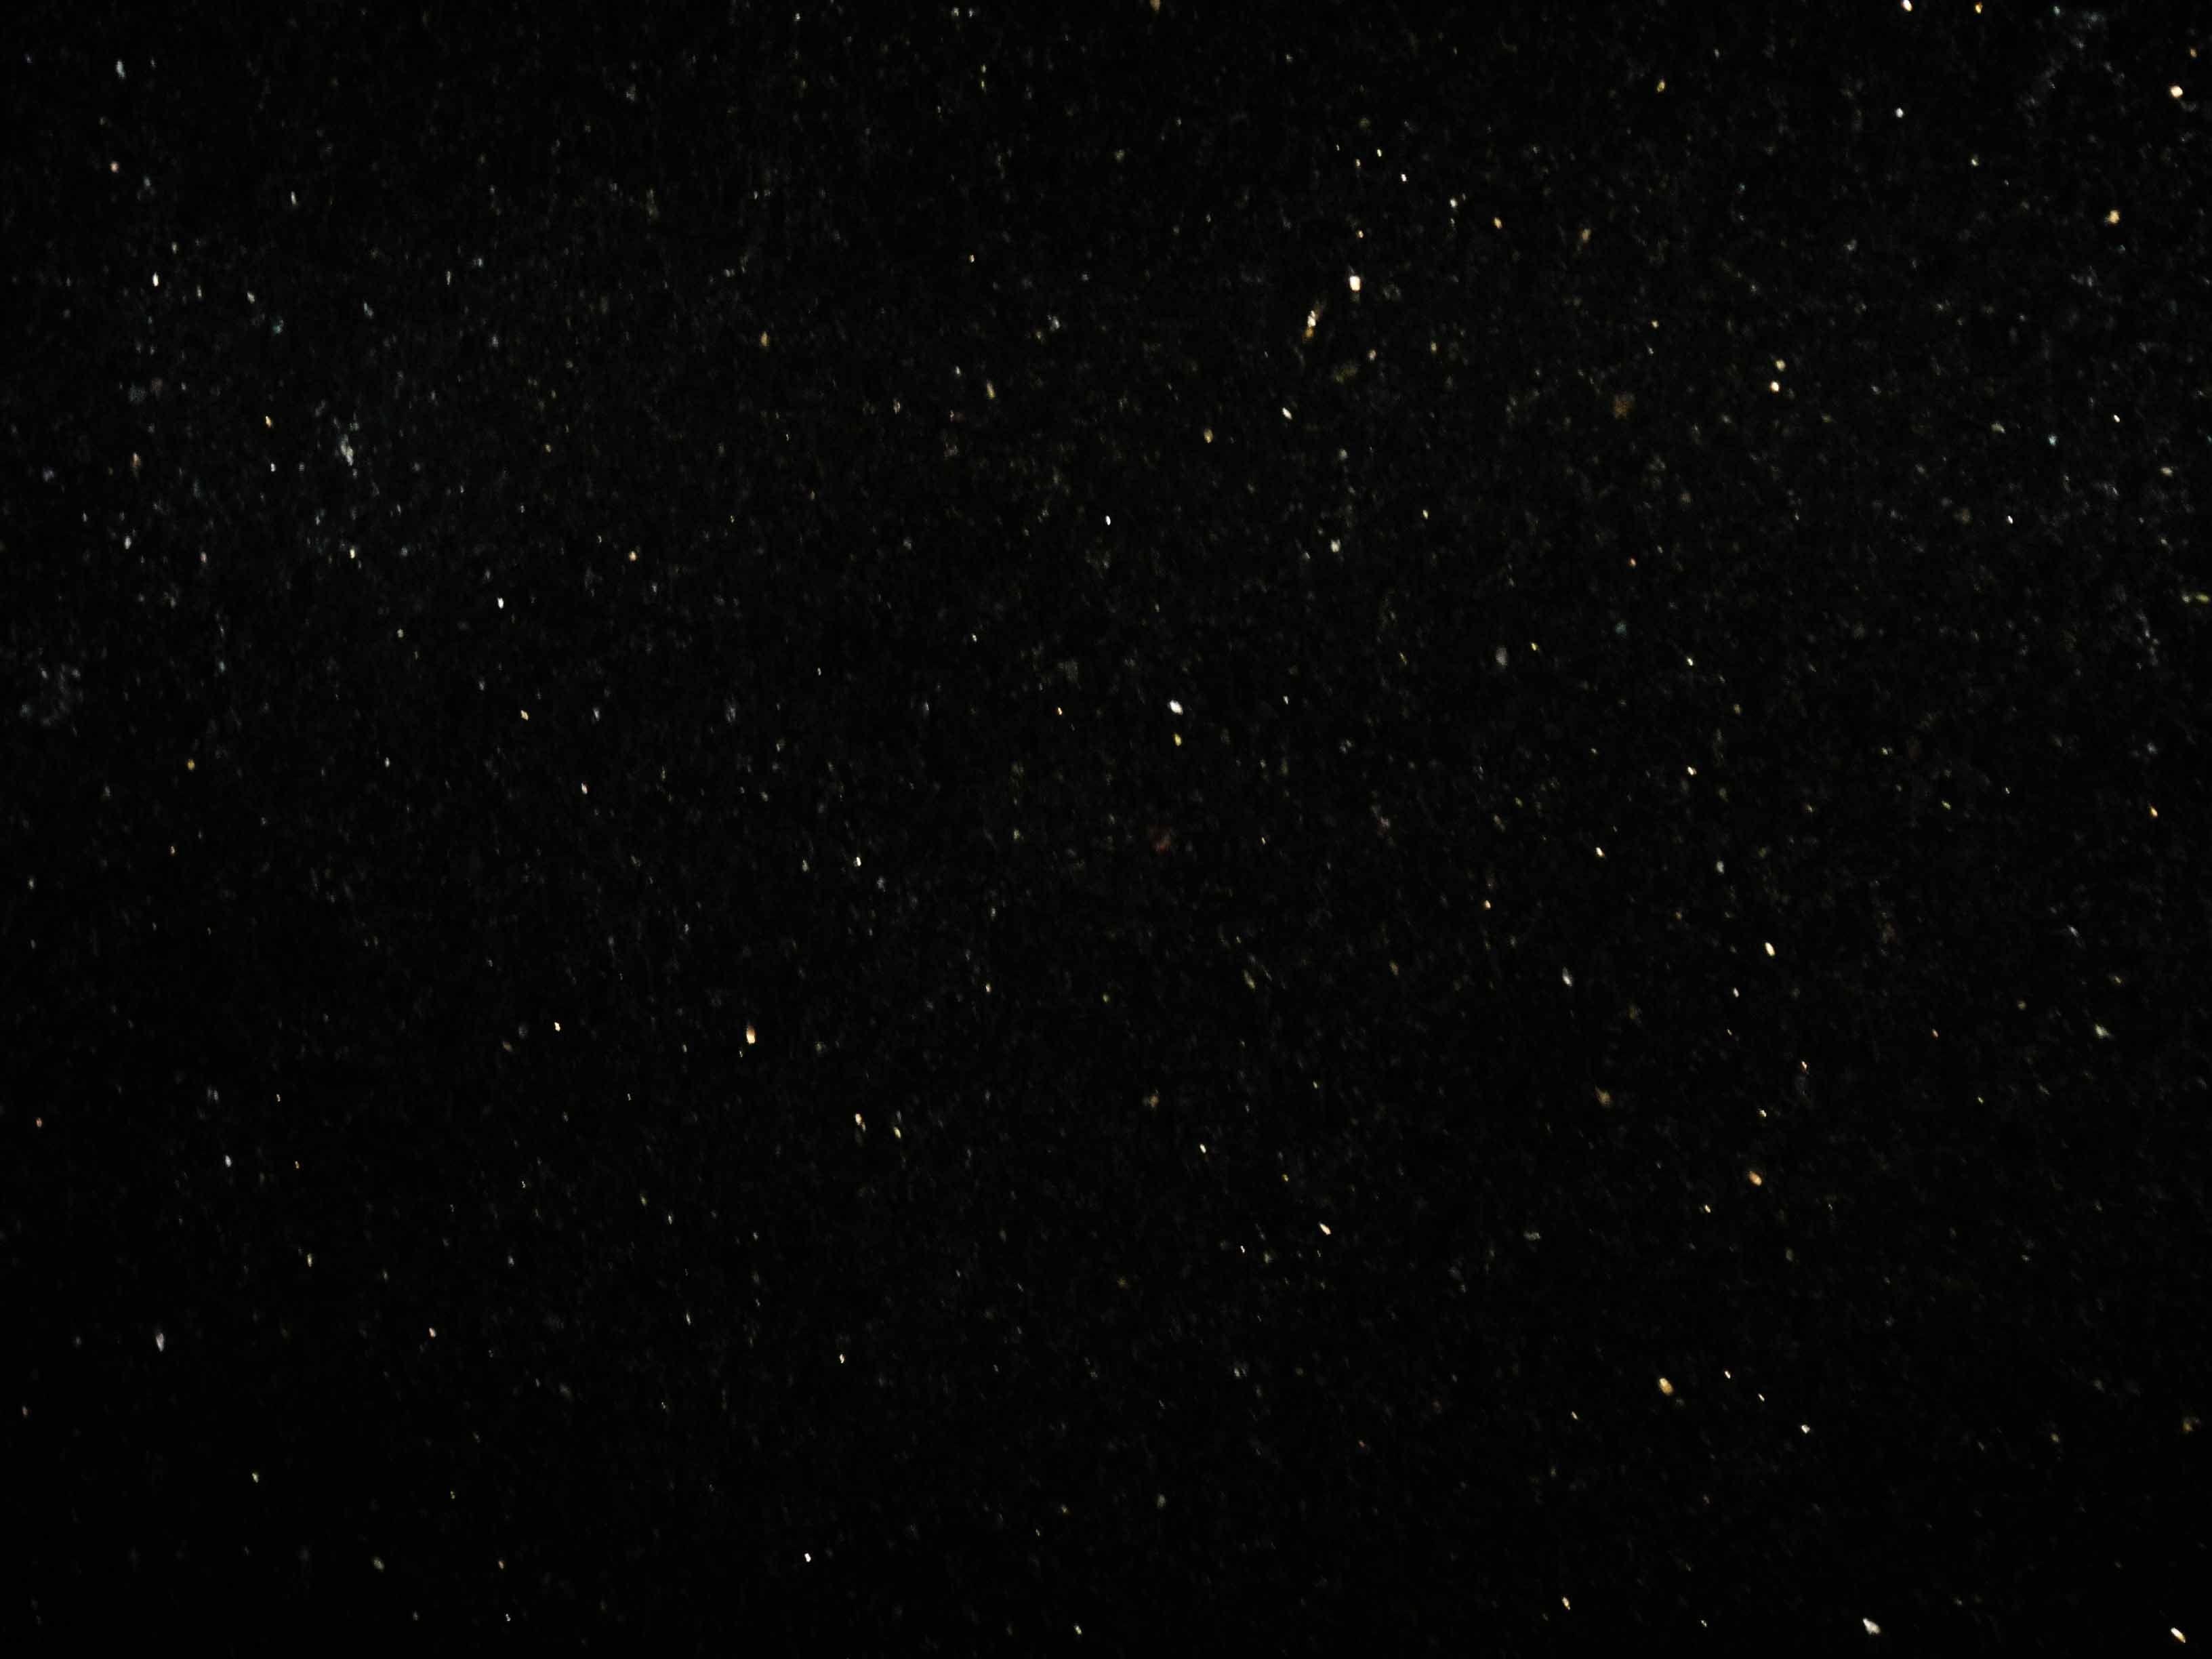 Hình nền vũ trụ đen cực đẹp sẽ mang lại cho bạn một trải nghiệm tuyệt vời. Với chất lượng HD, bạn sẽ được chiêm ngưỡng những bức ảnh ấn tượng về vũ trụ đen, tạo ra không gian nơi bạn có thể trầm mình suy nghĩ và thư giãn một cách tuyệt vời.